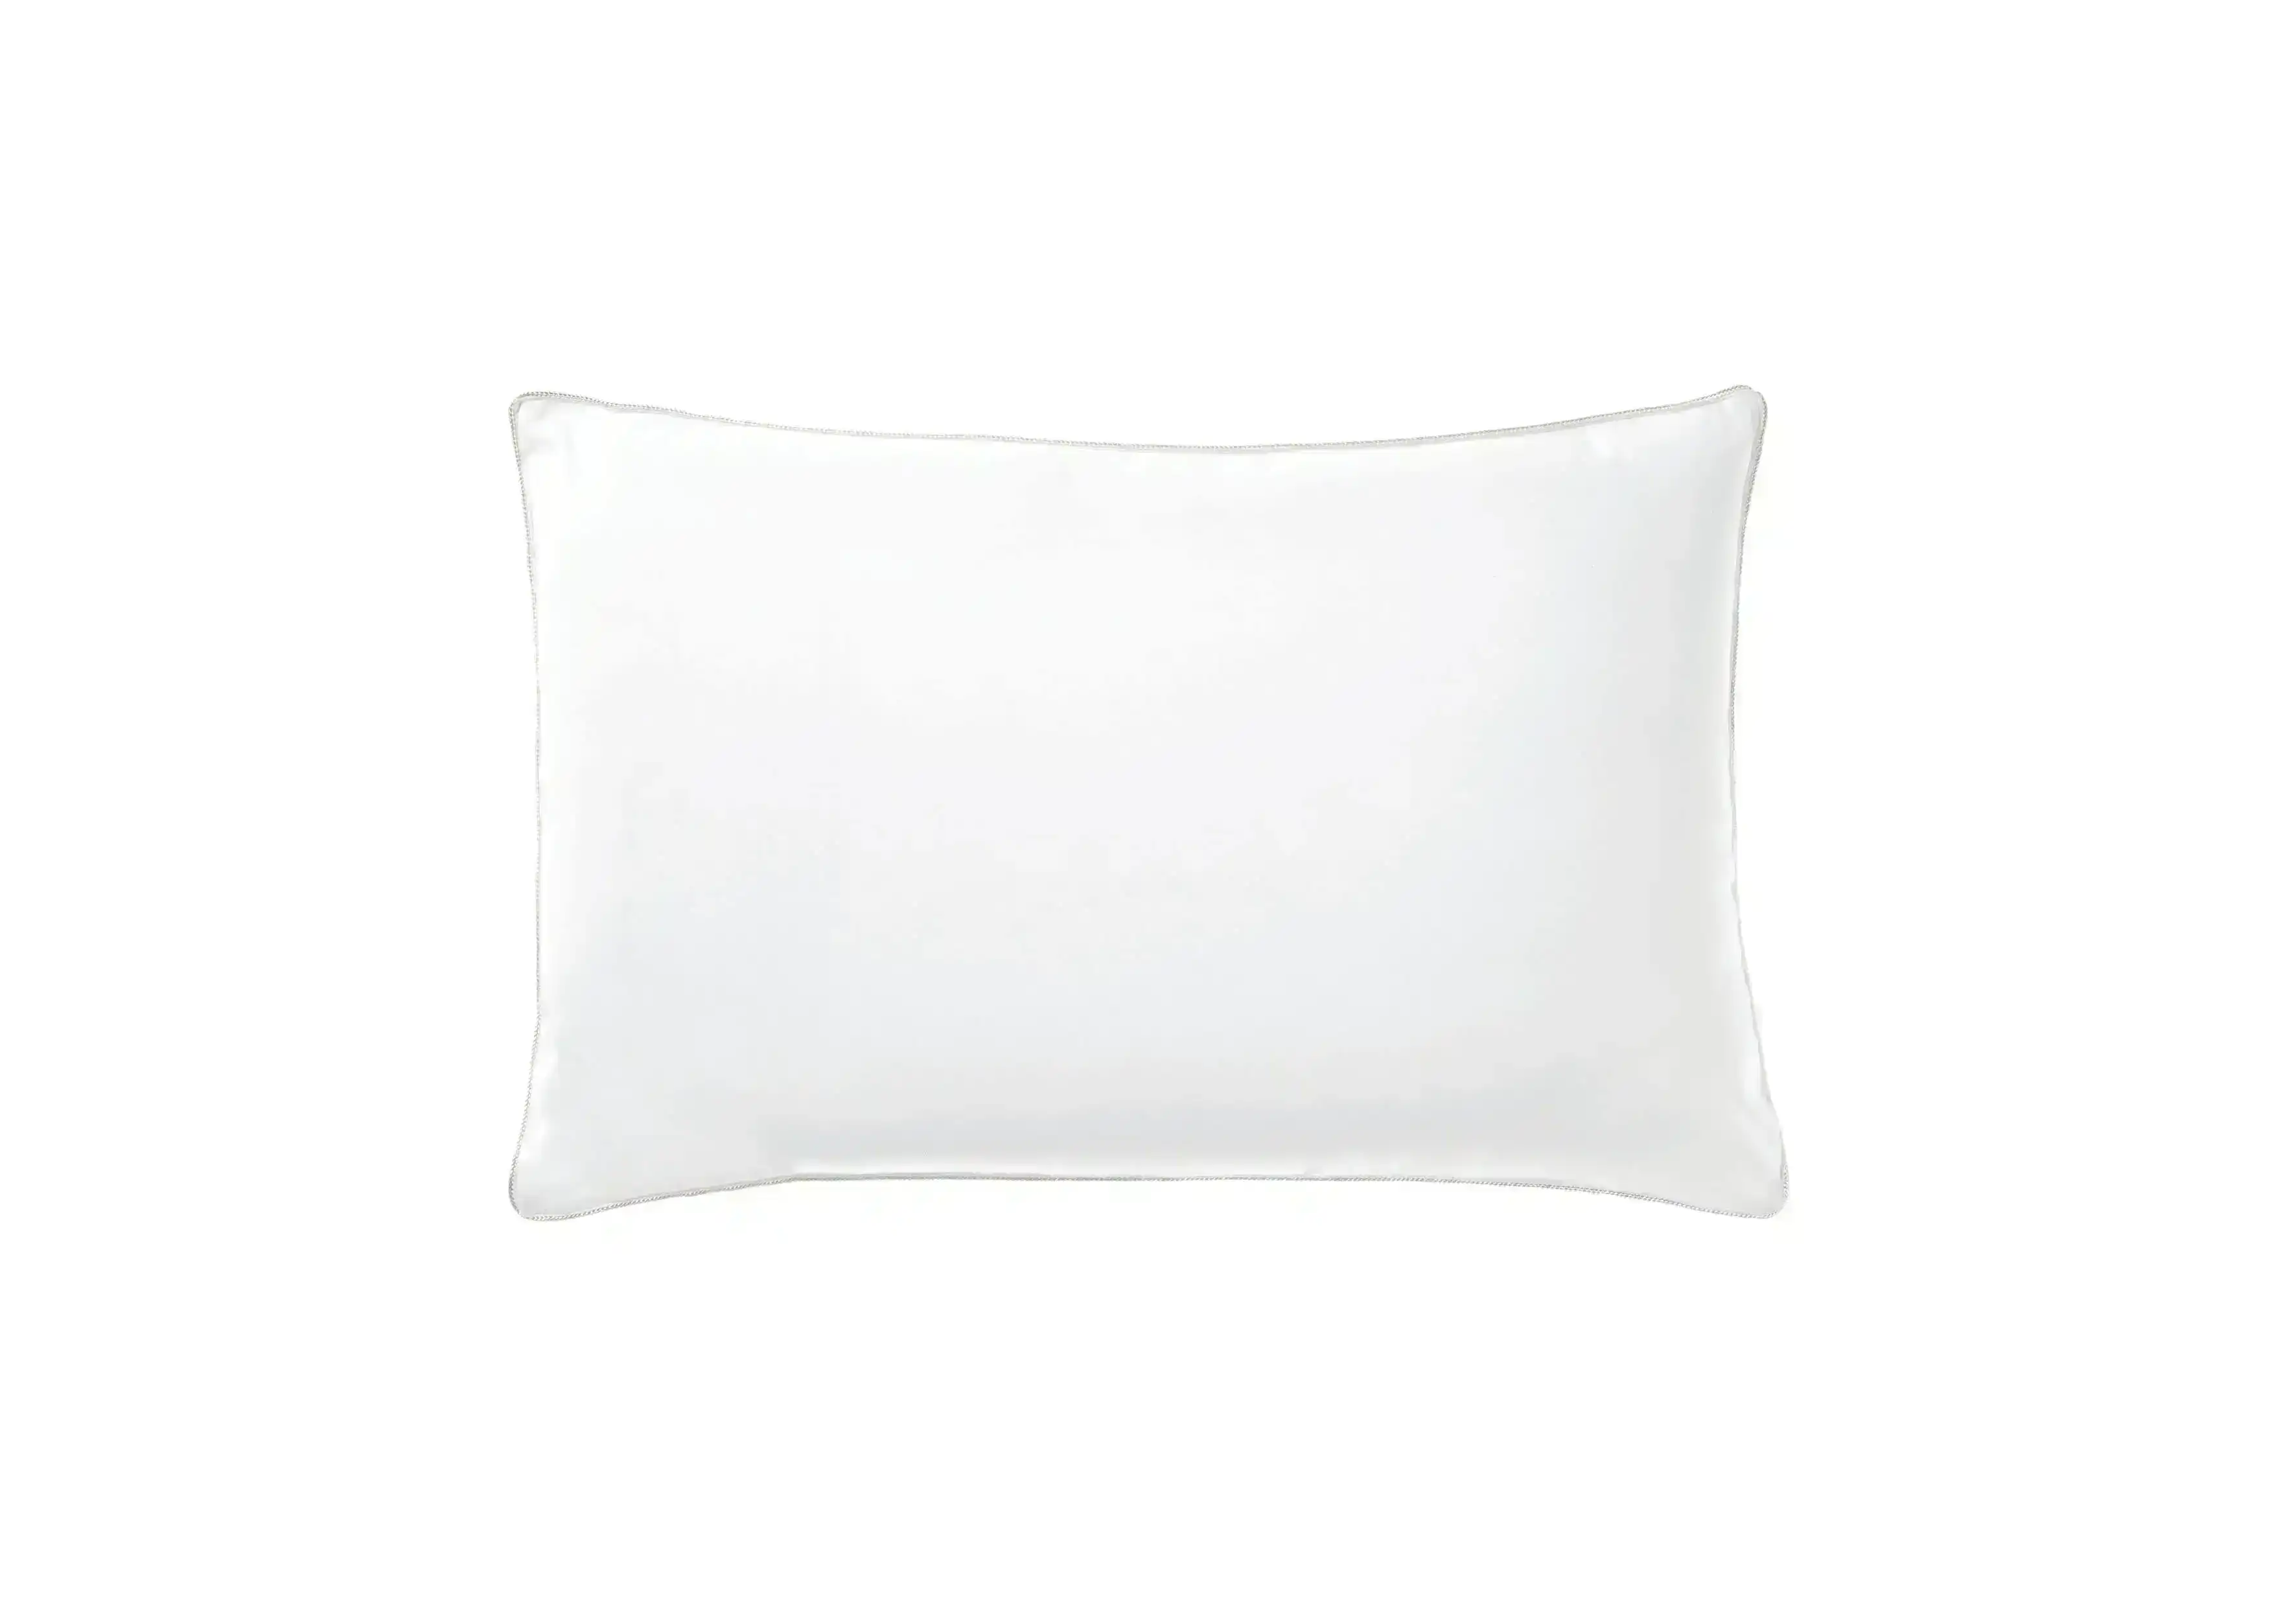 Linen House Comfy Standard Pillow - 800 GSM